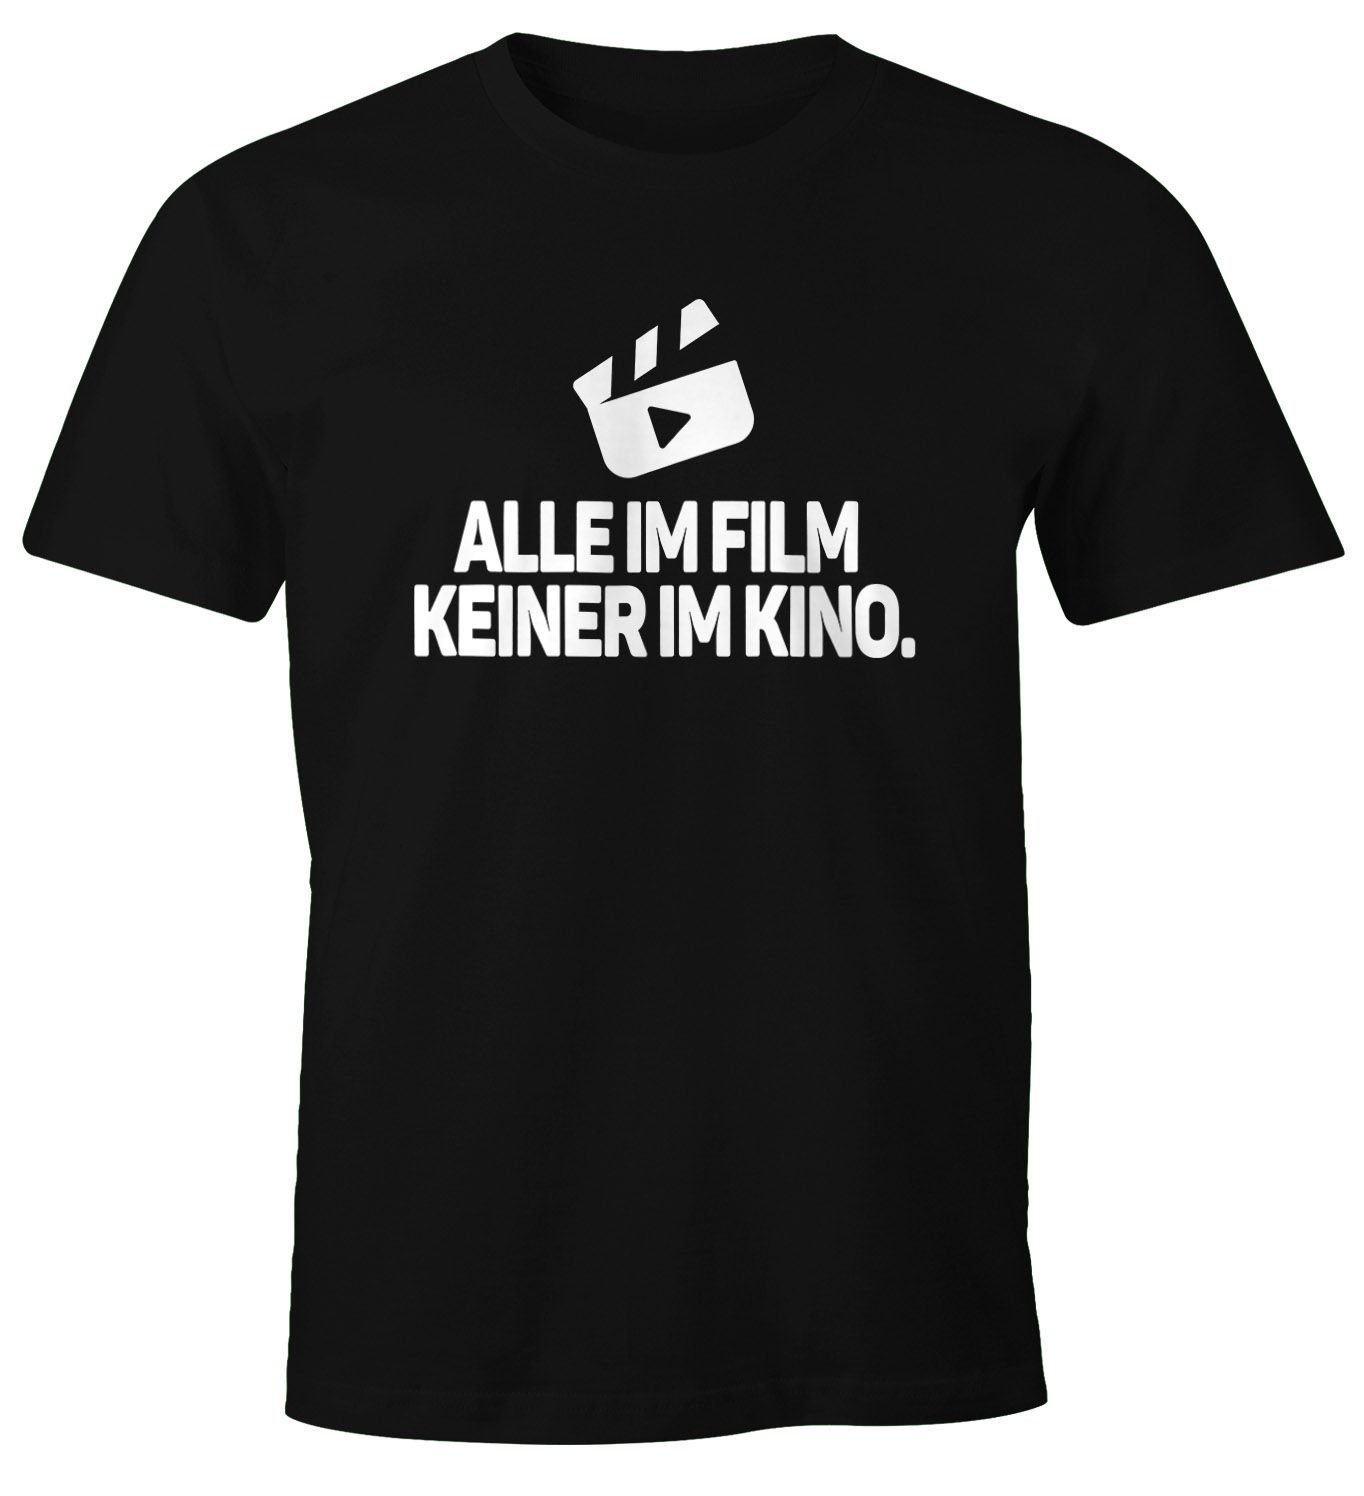 MoonWorks Print-Shirt Herren T-Shirt Spruch Alle im Film Keiner im Kino Fun-Shirt Party Festival Techno Rave Oberteil Moonworks® mit Print